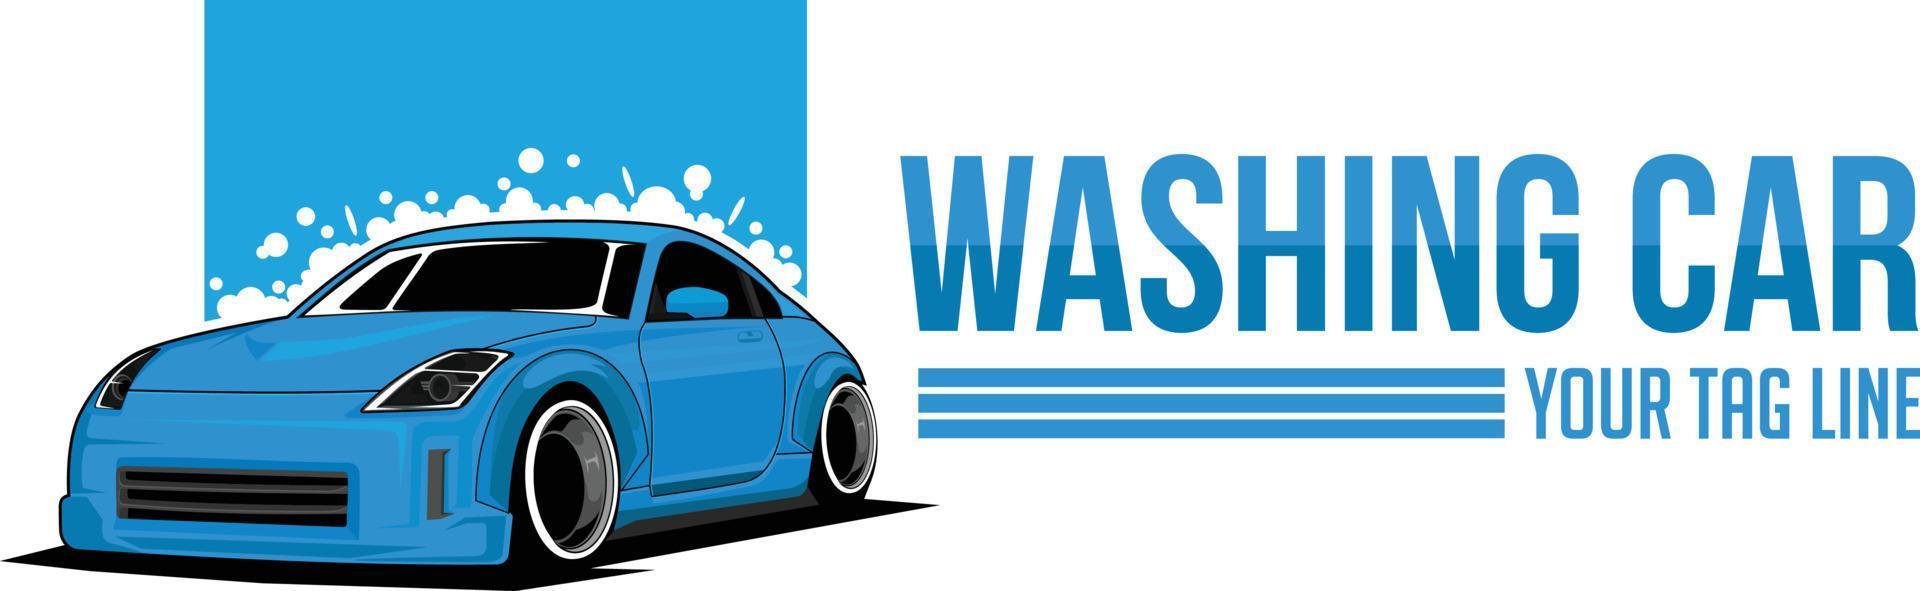 tvätta bil logotyp vektor